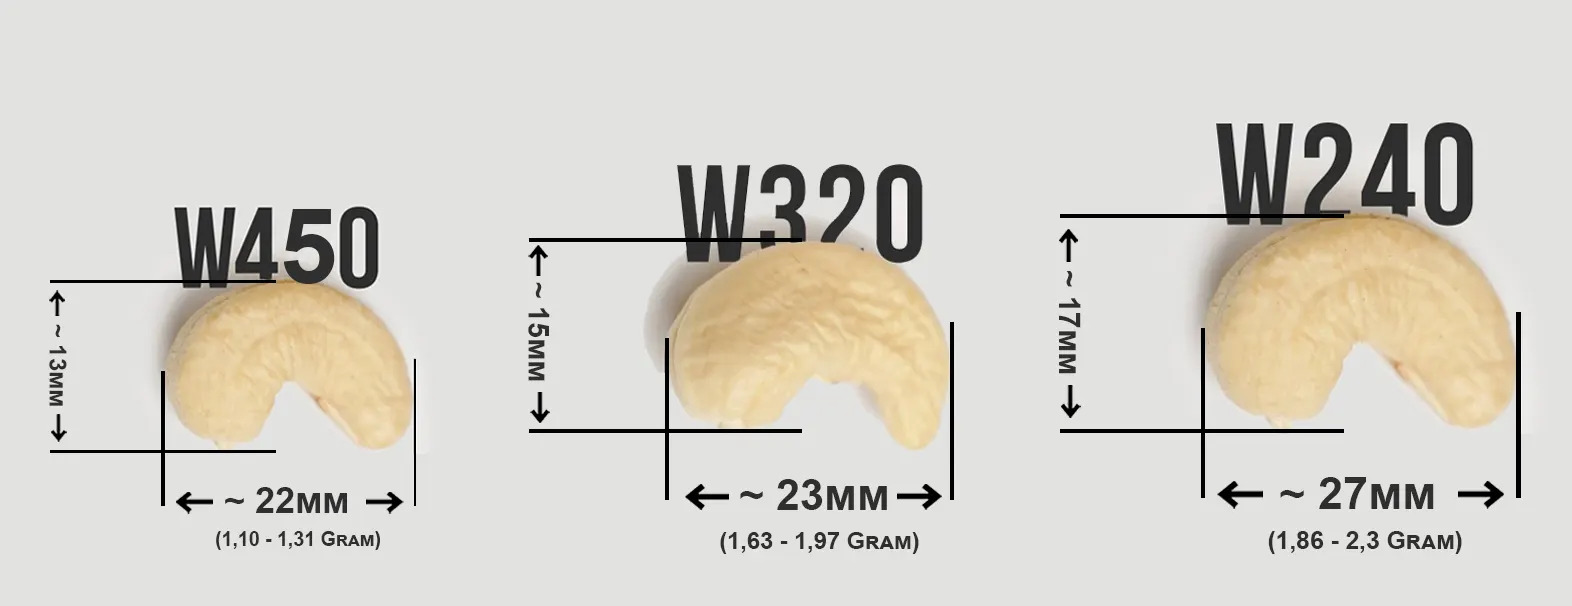 Phân loại hạt điều W240 và các loại hạt điều khác